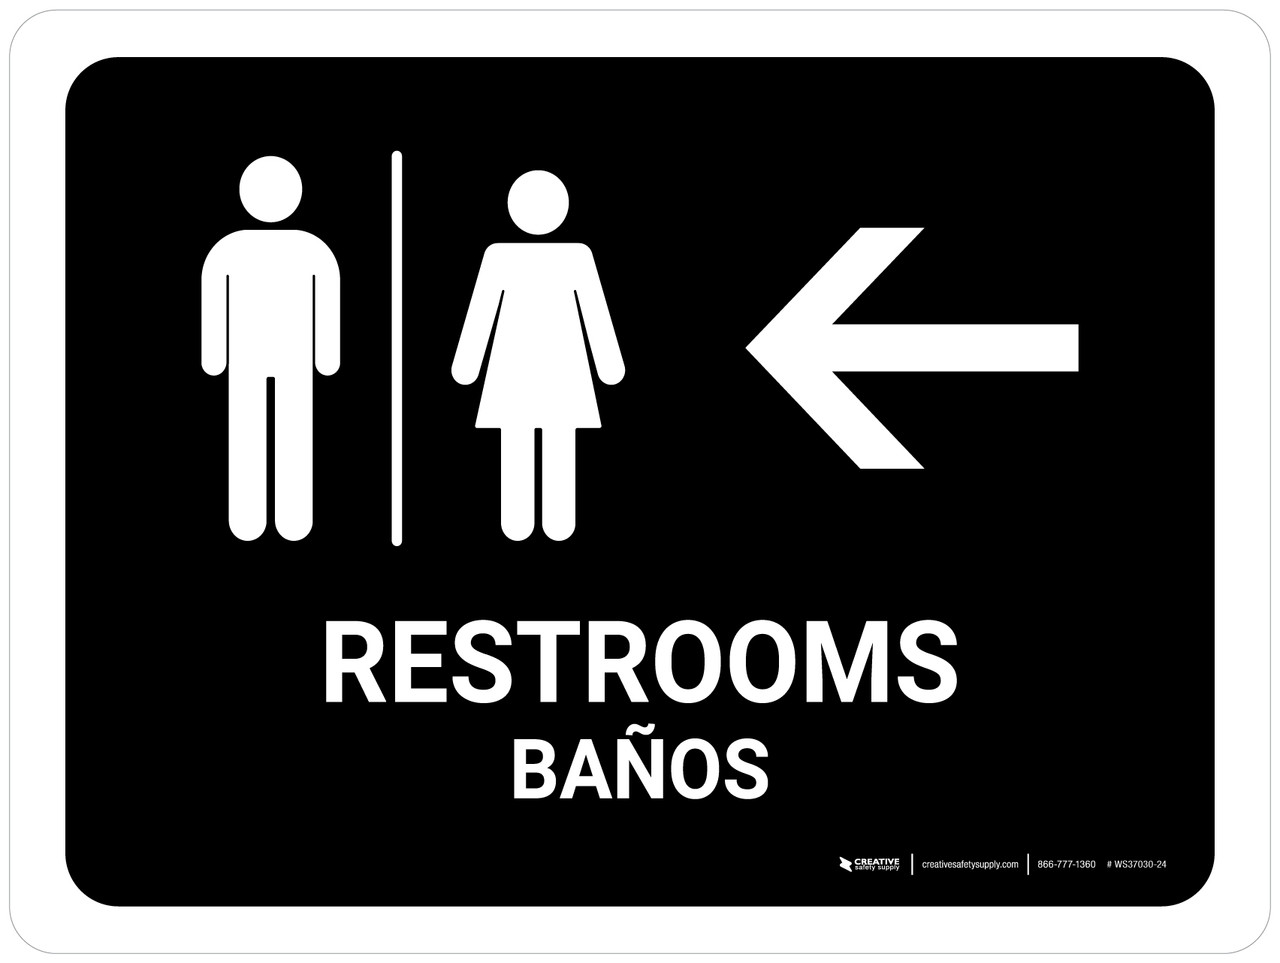 bathroom sign with arrow